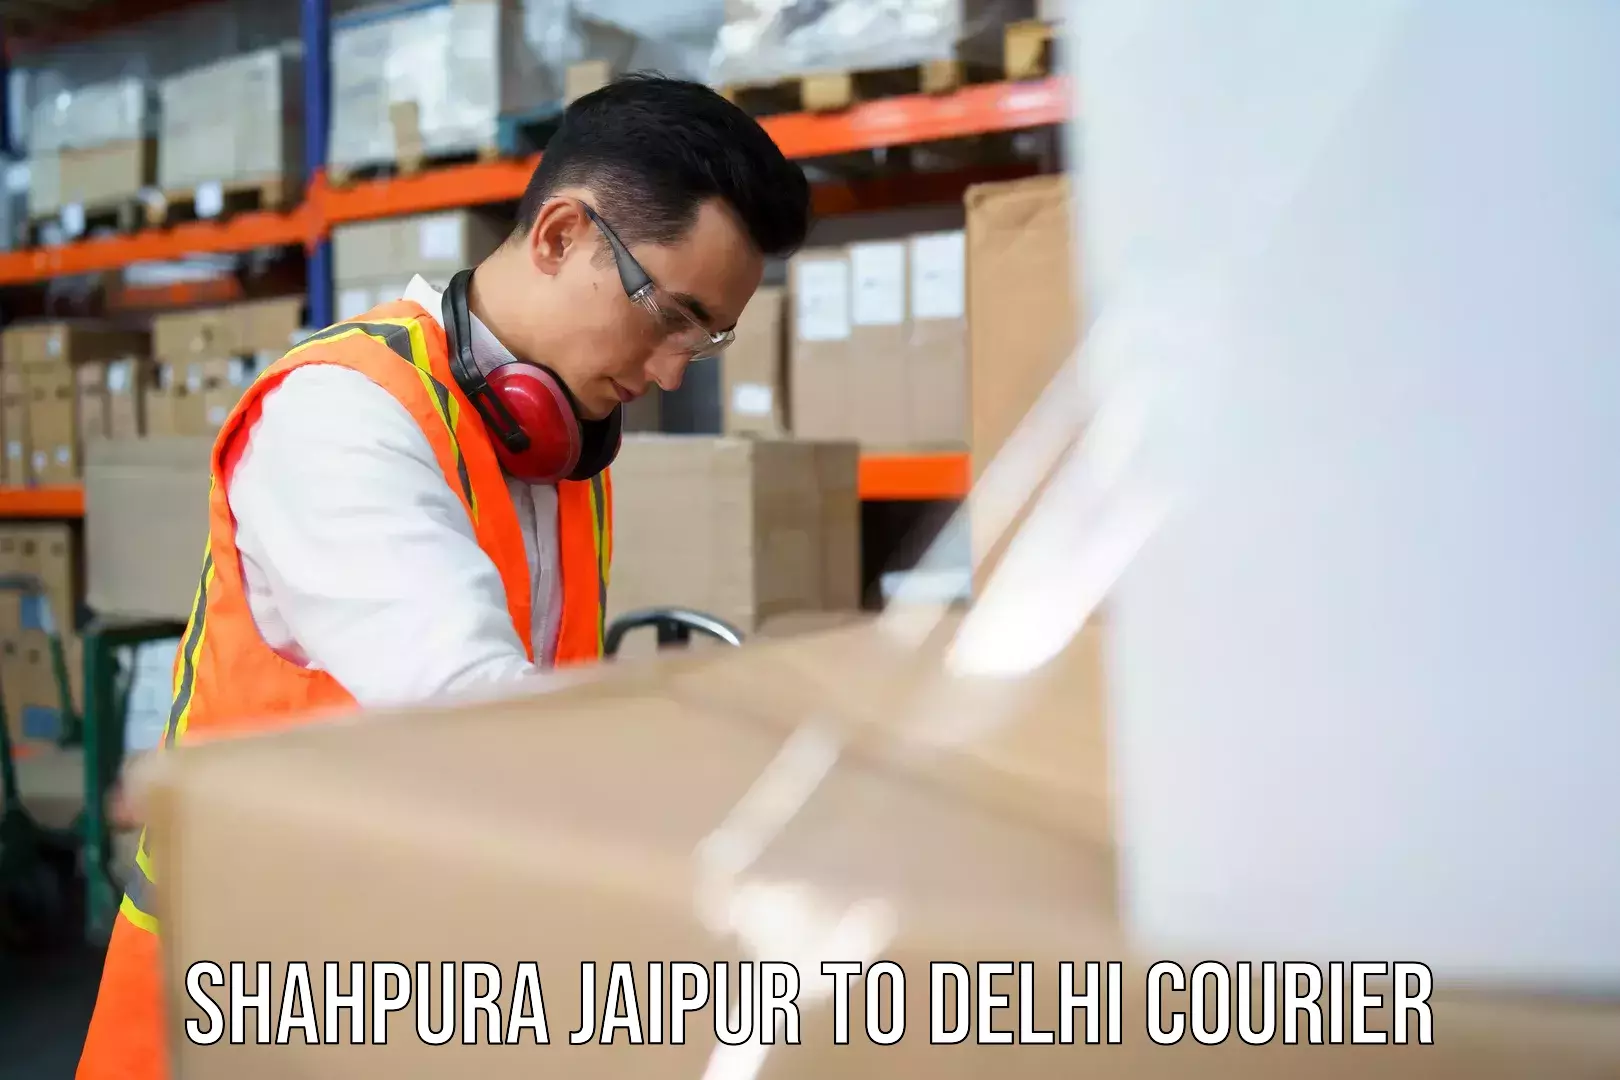 Global courier networks Shahpura Jaipur to Krishna Nagar